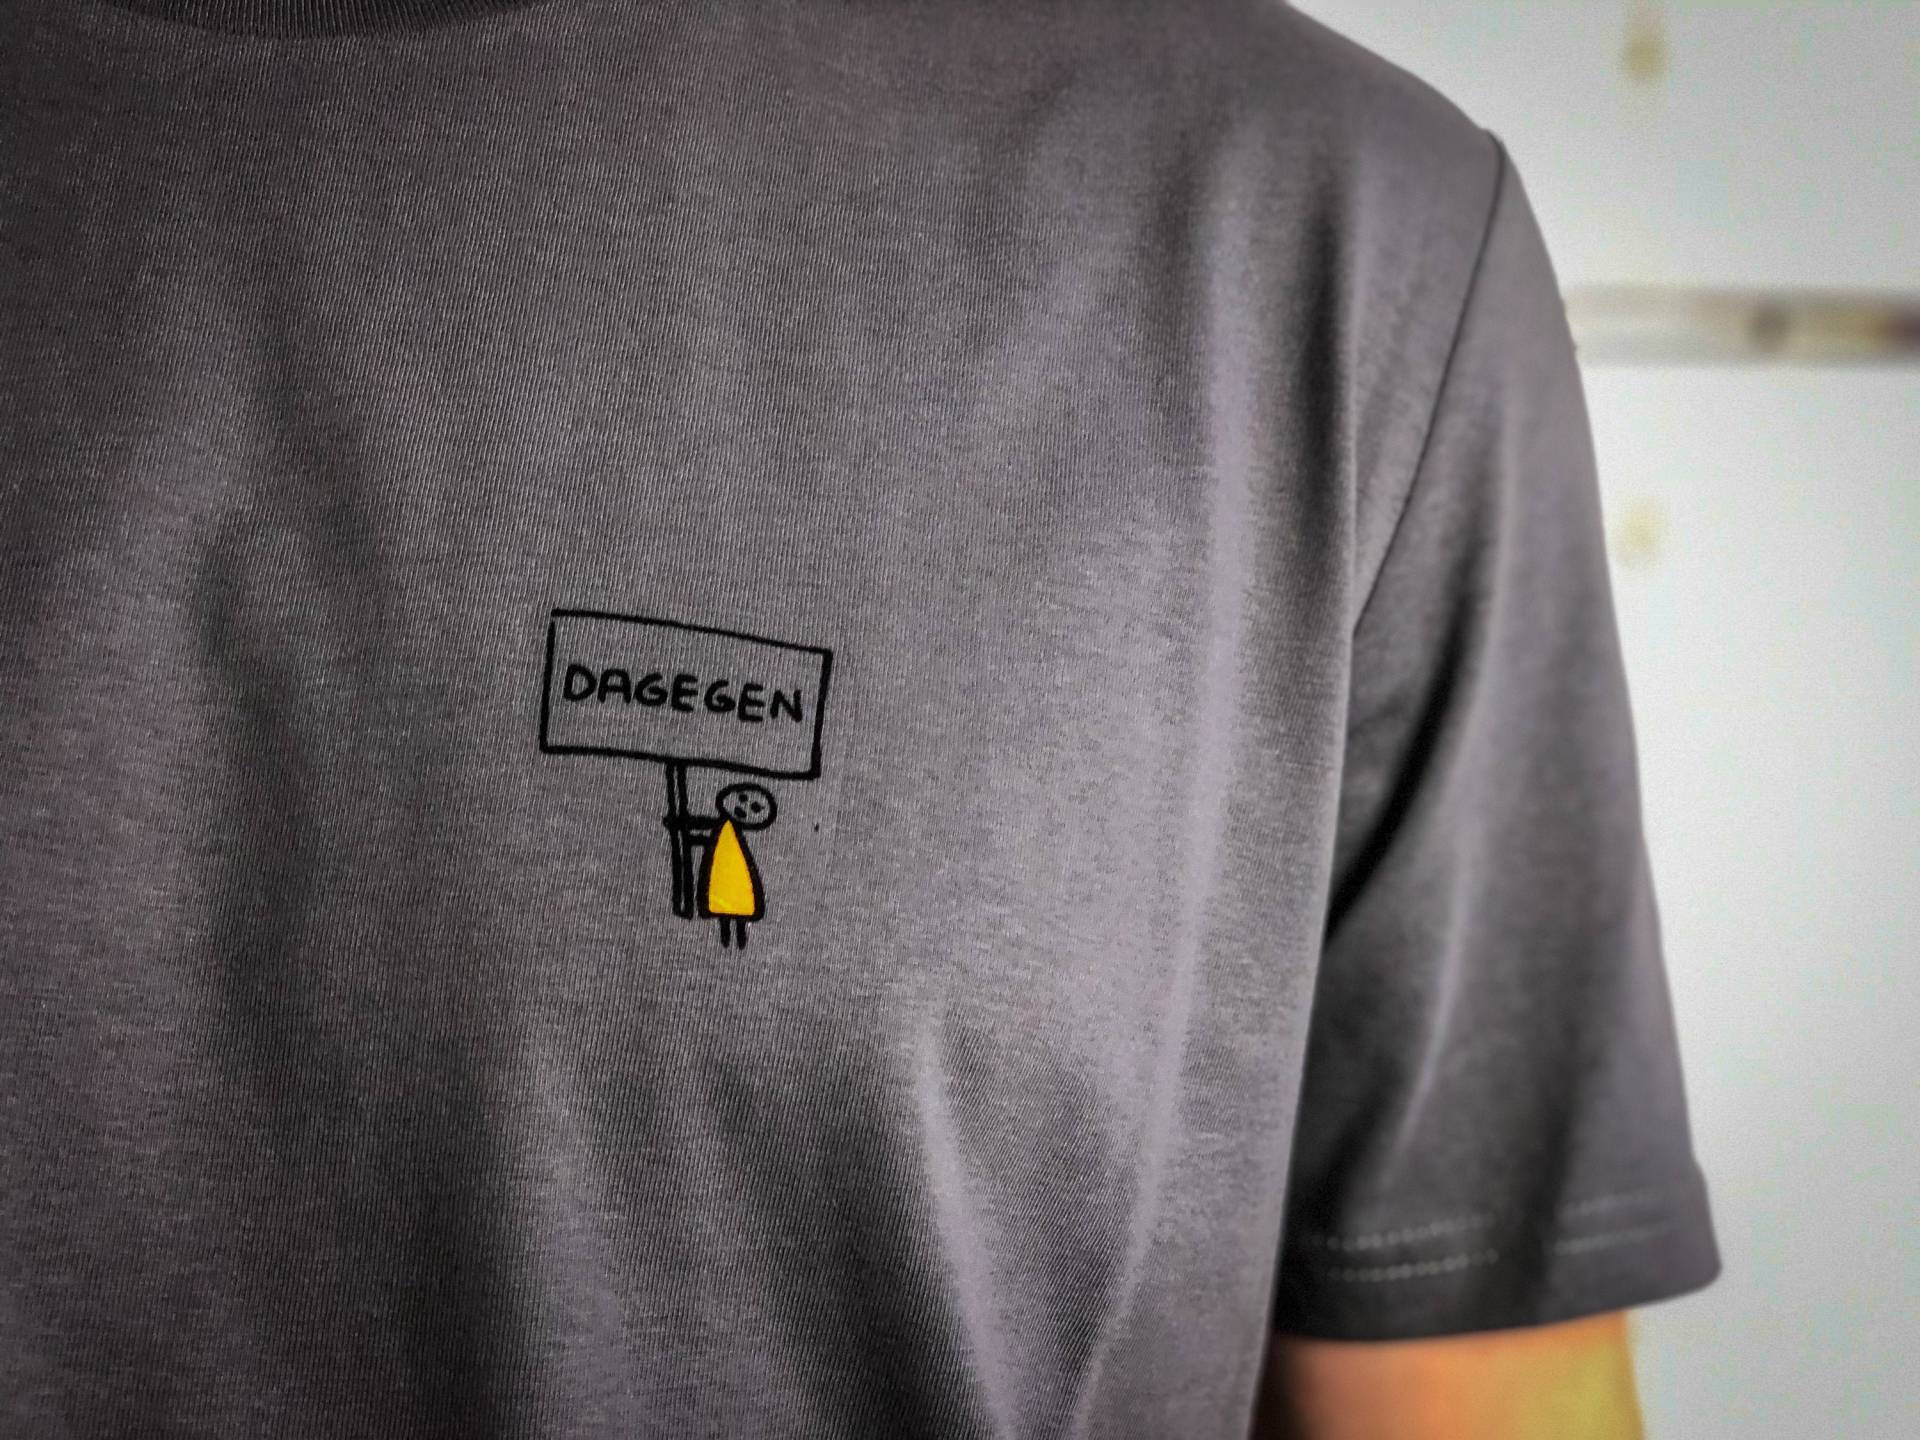 Männer T-Shirt Handy Dagegen Bio Shirt Demo Dunkelgrau Mit Lustigem Druck Spruch Motiv Aus Flock + Weitere Farben von naaknaak